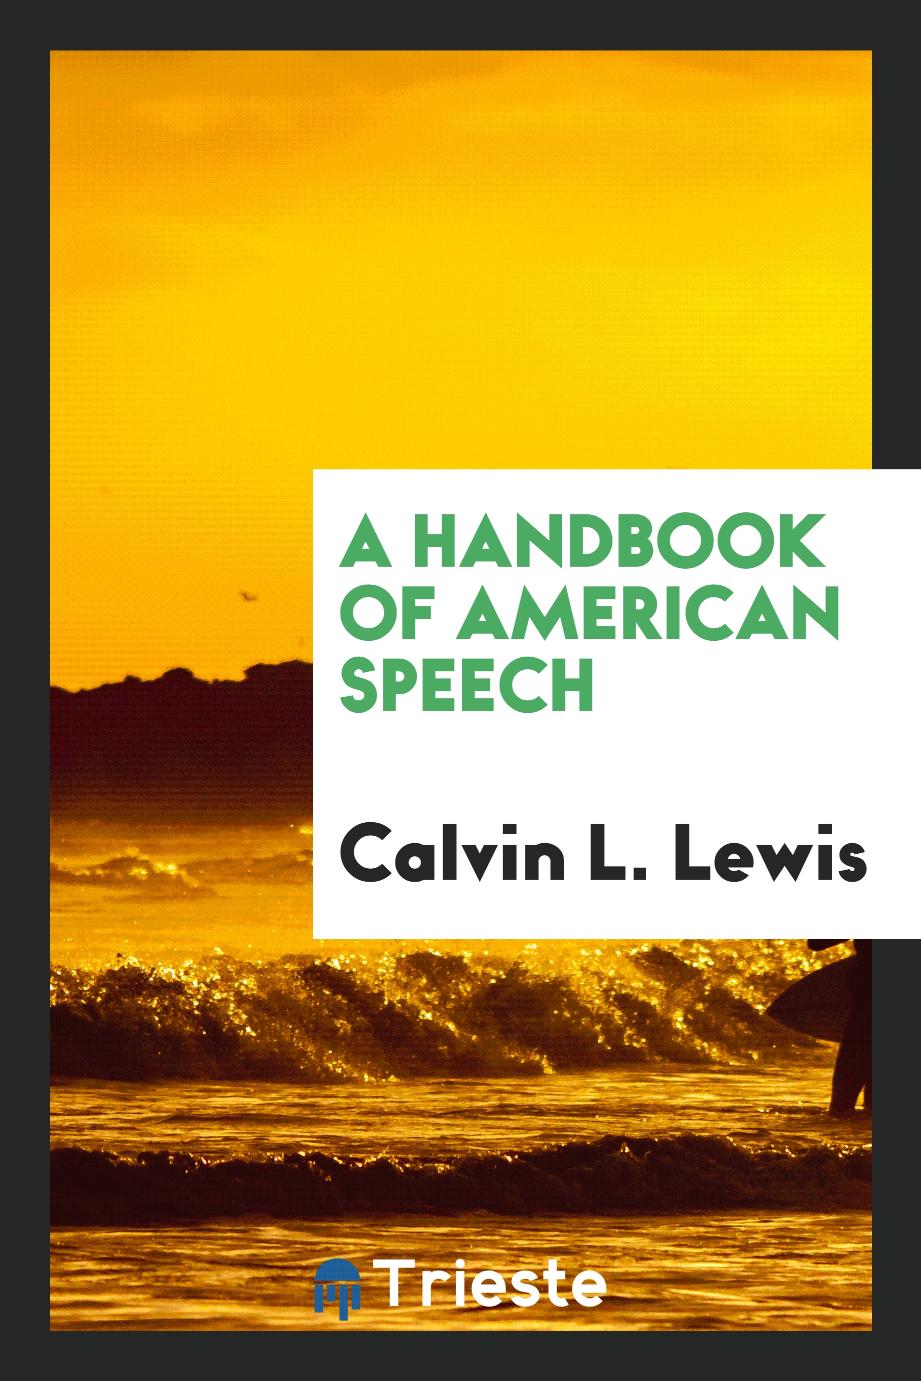 A handbook of American speech